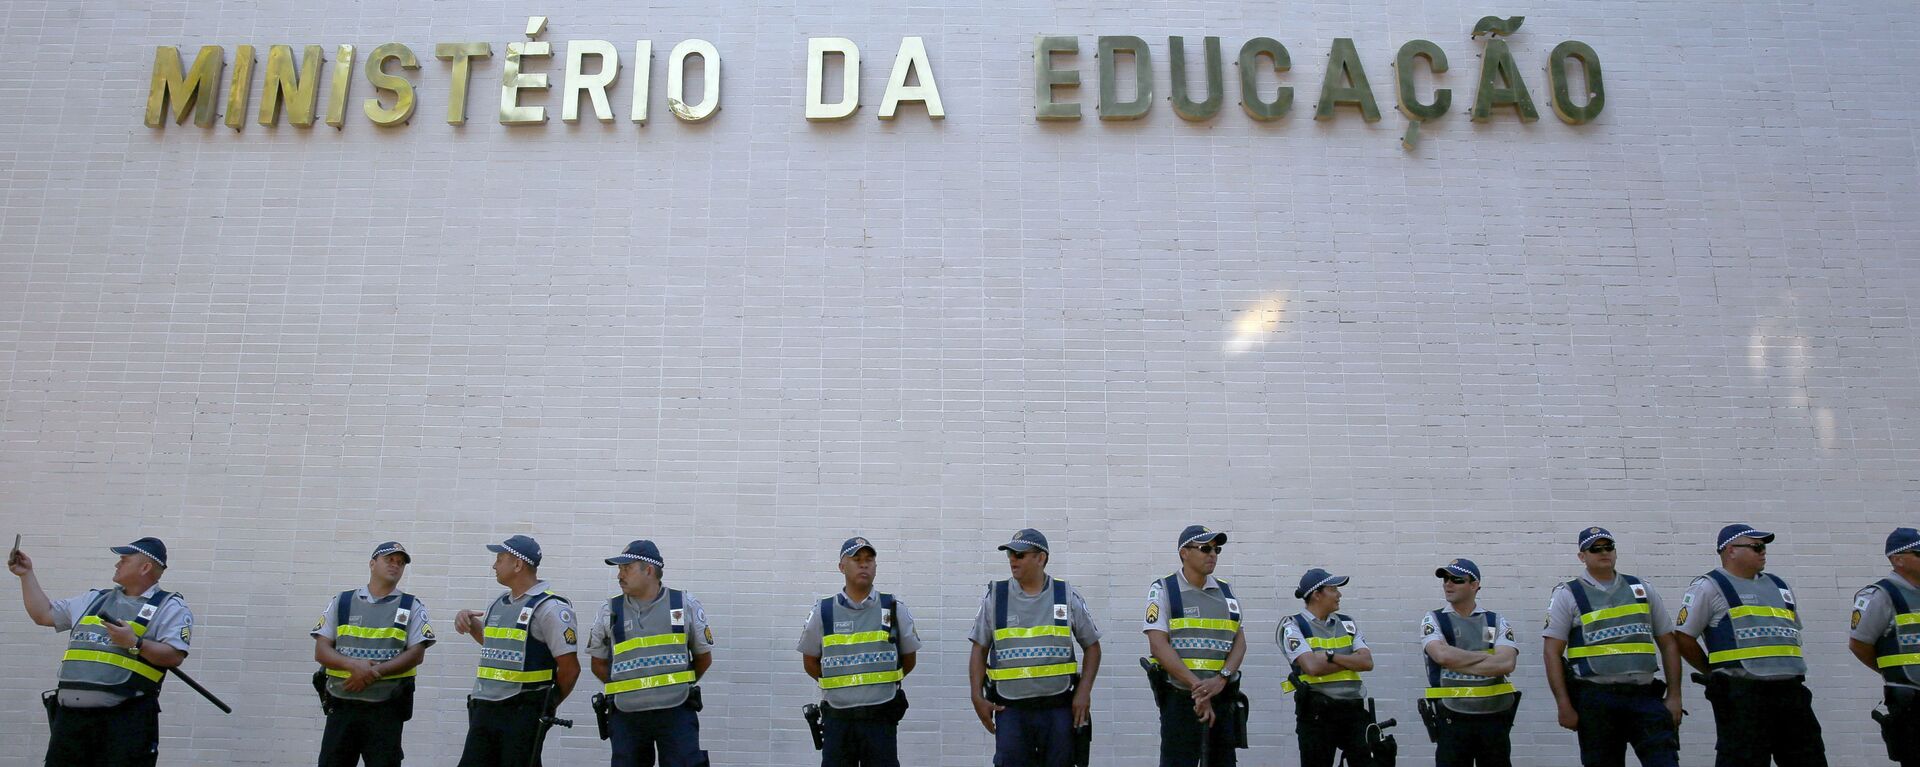 Protesto de estudantes contra os cortes na educação, na Esplanada dos Ministérios. - Sputnik Brasil, 1920, 30.09.2020